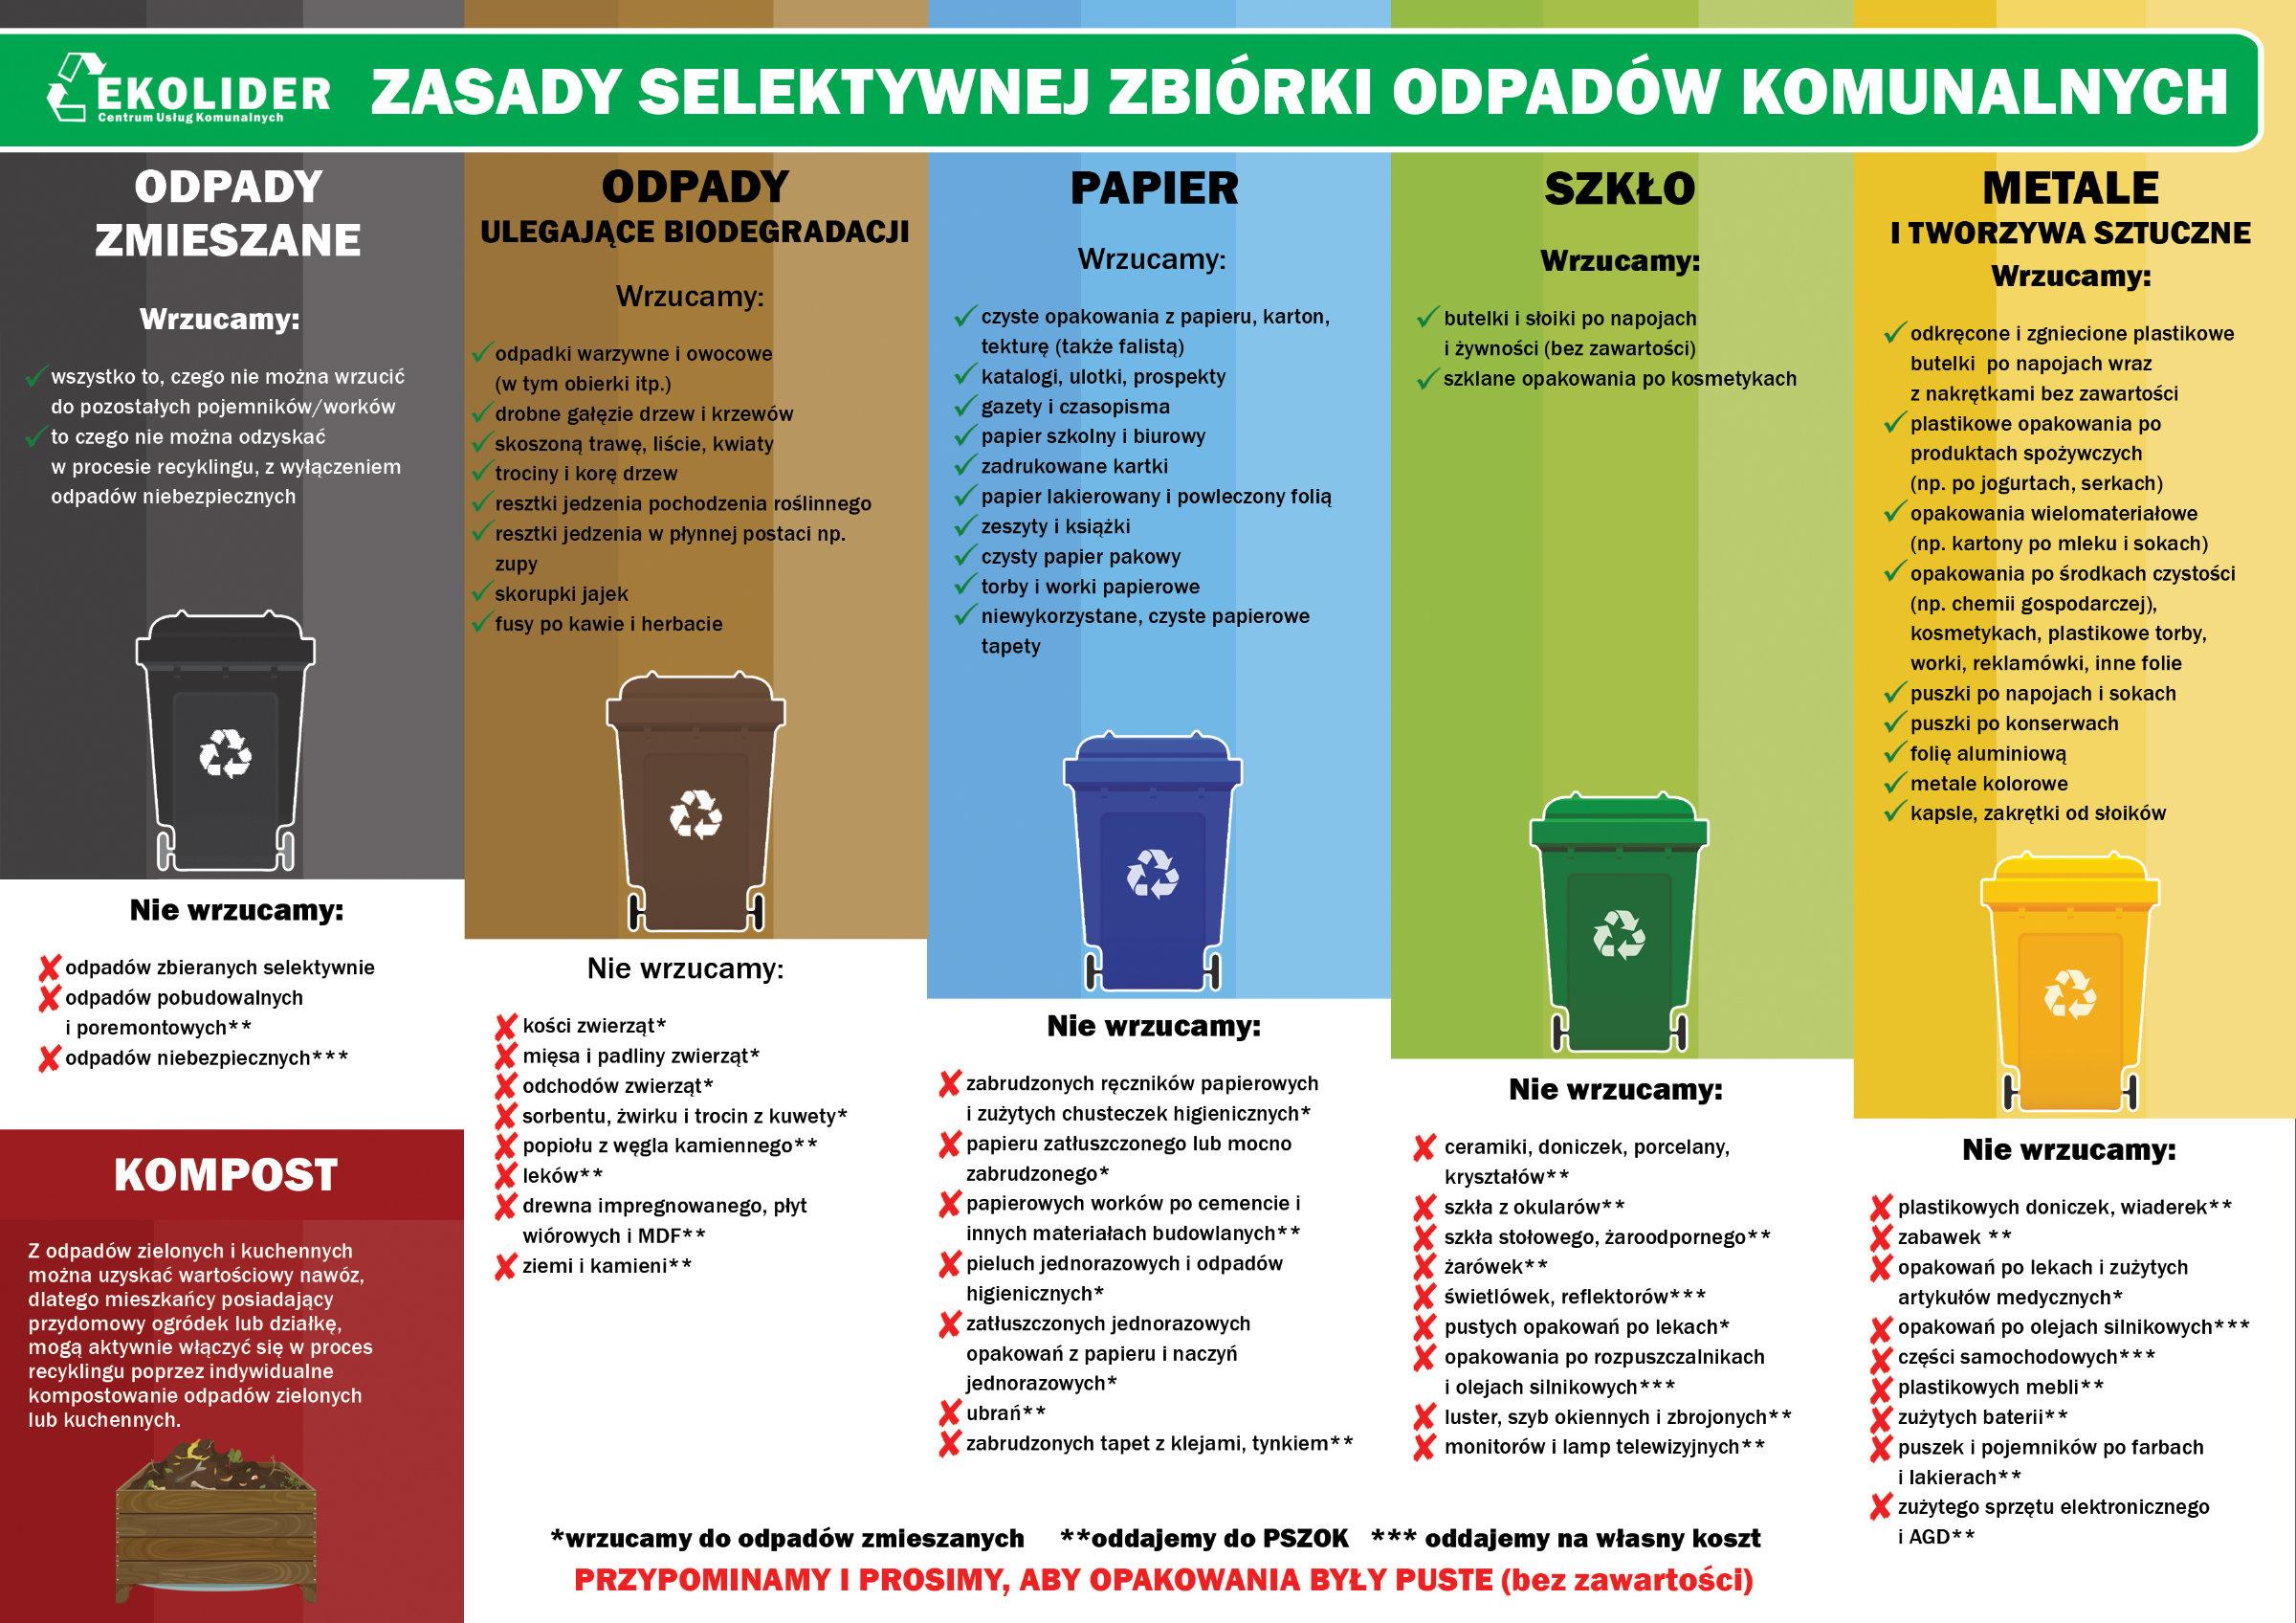 Jak selekcjonować odpady komunalne